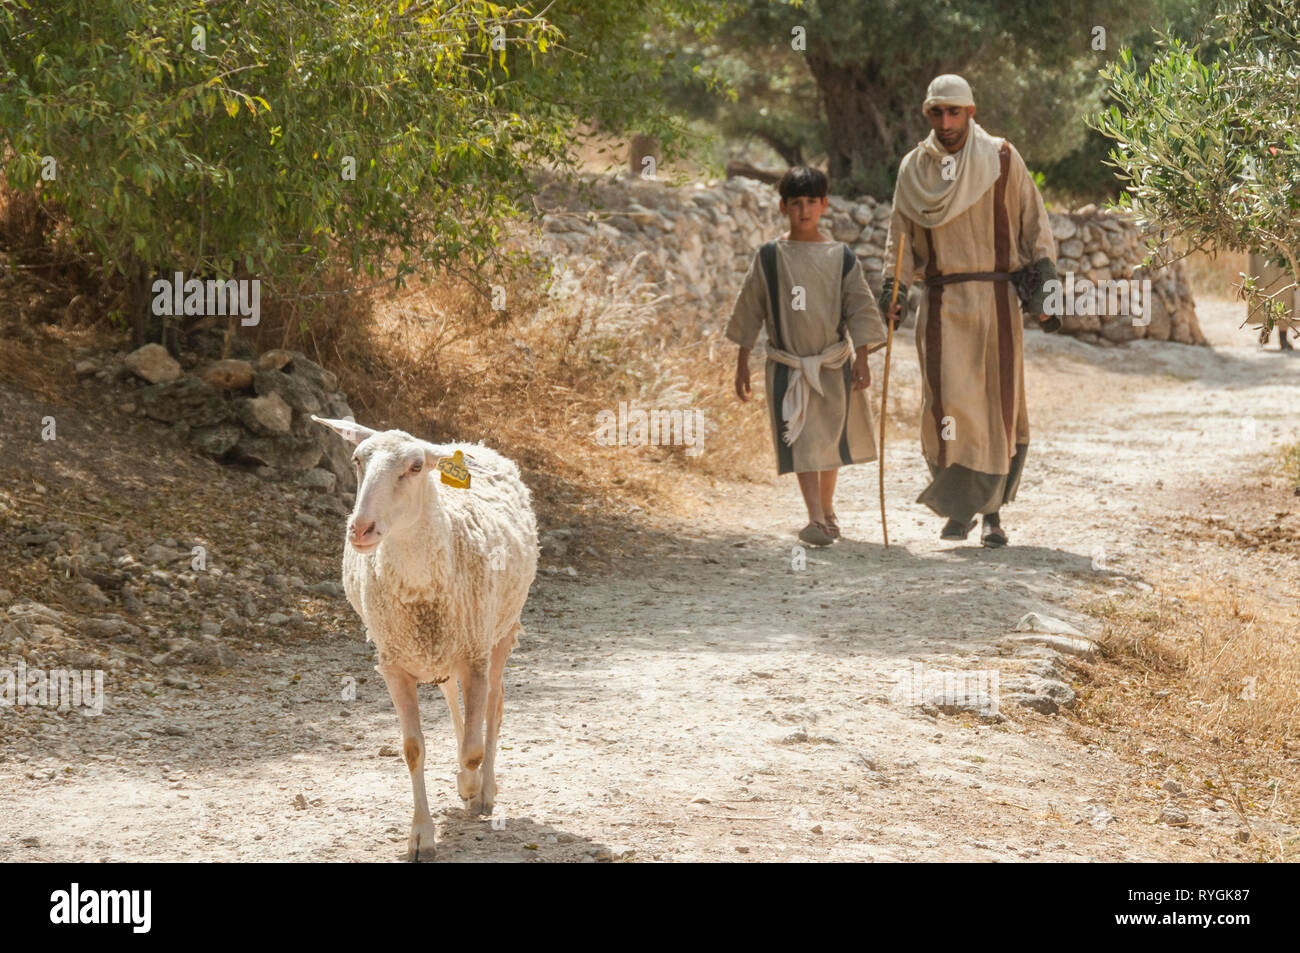 Nazaret,Israel,22-may-2010:chico y el hombre en la ropa de la época de la biblia camina con ovejas en Nazaret en Israel,Nazaret es famoso de la Biblia desde el tiempo de Jesús Foto de stock